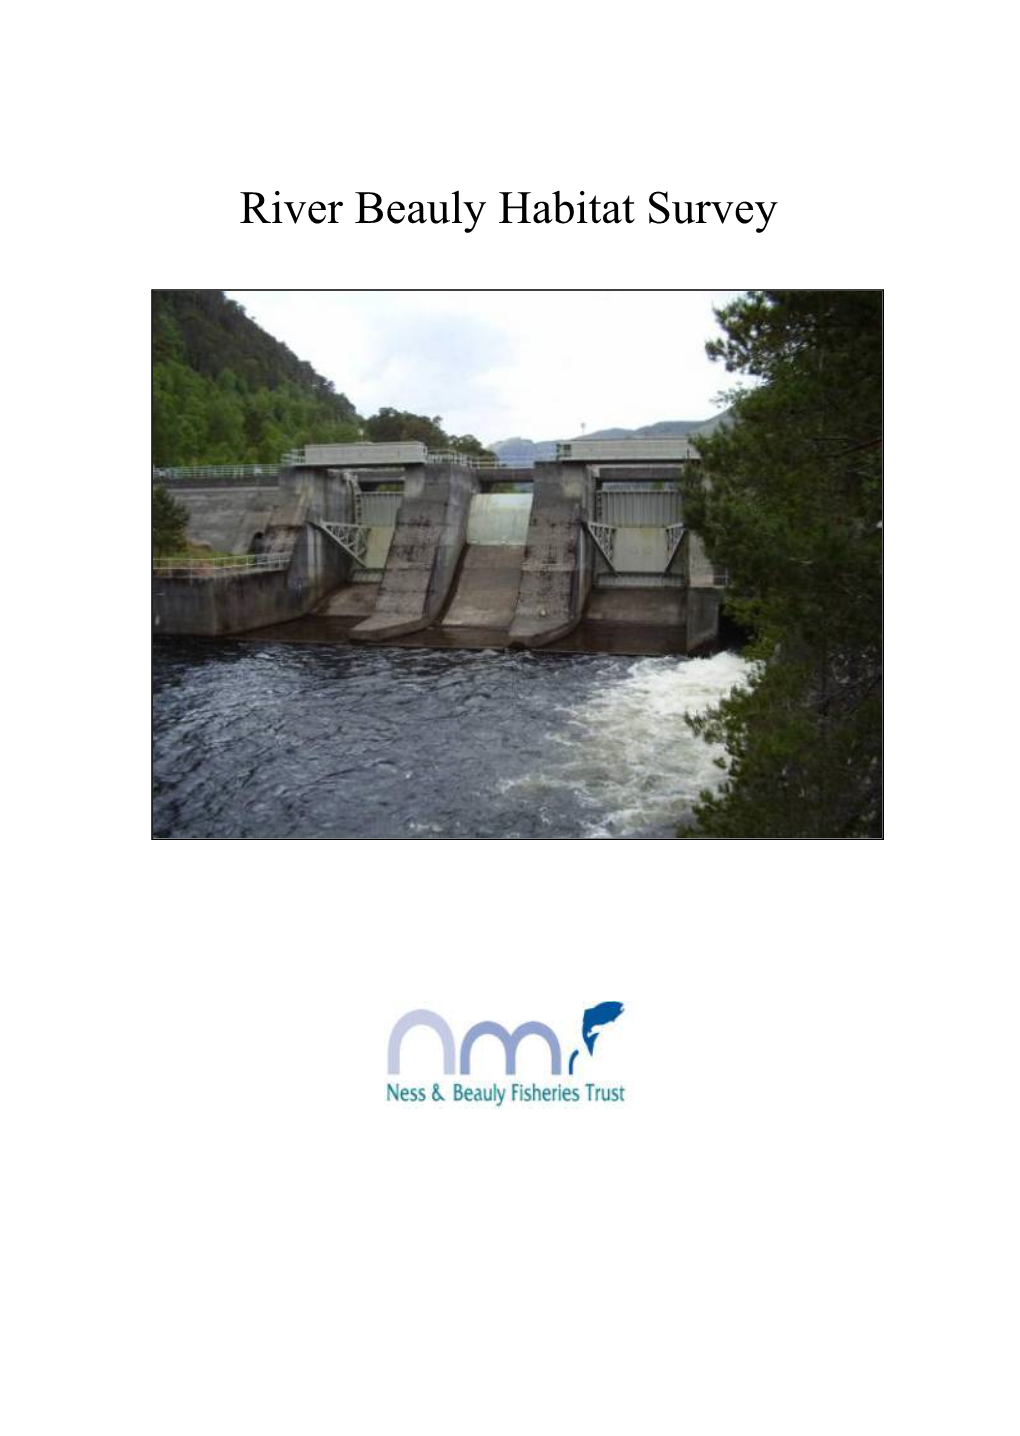 River Beauly Habitat Survey Contents